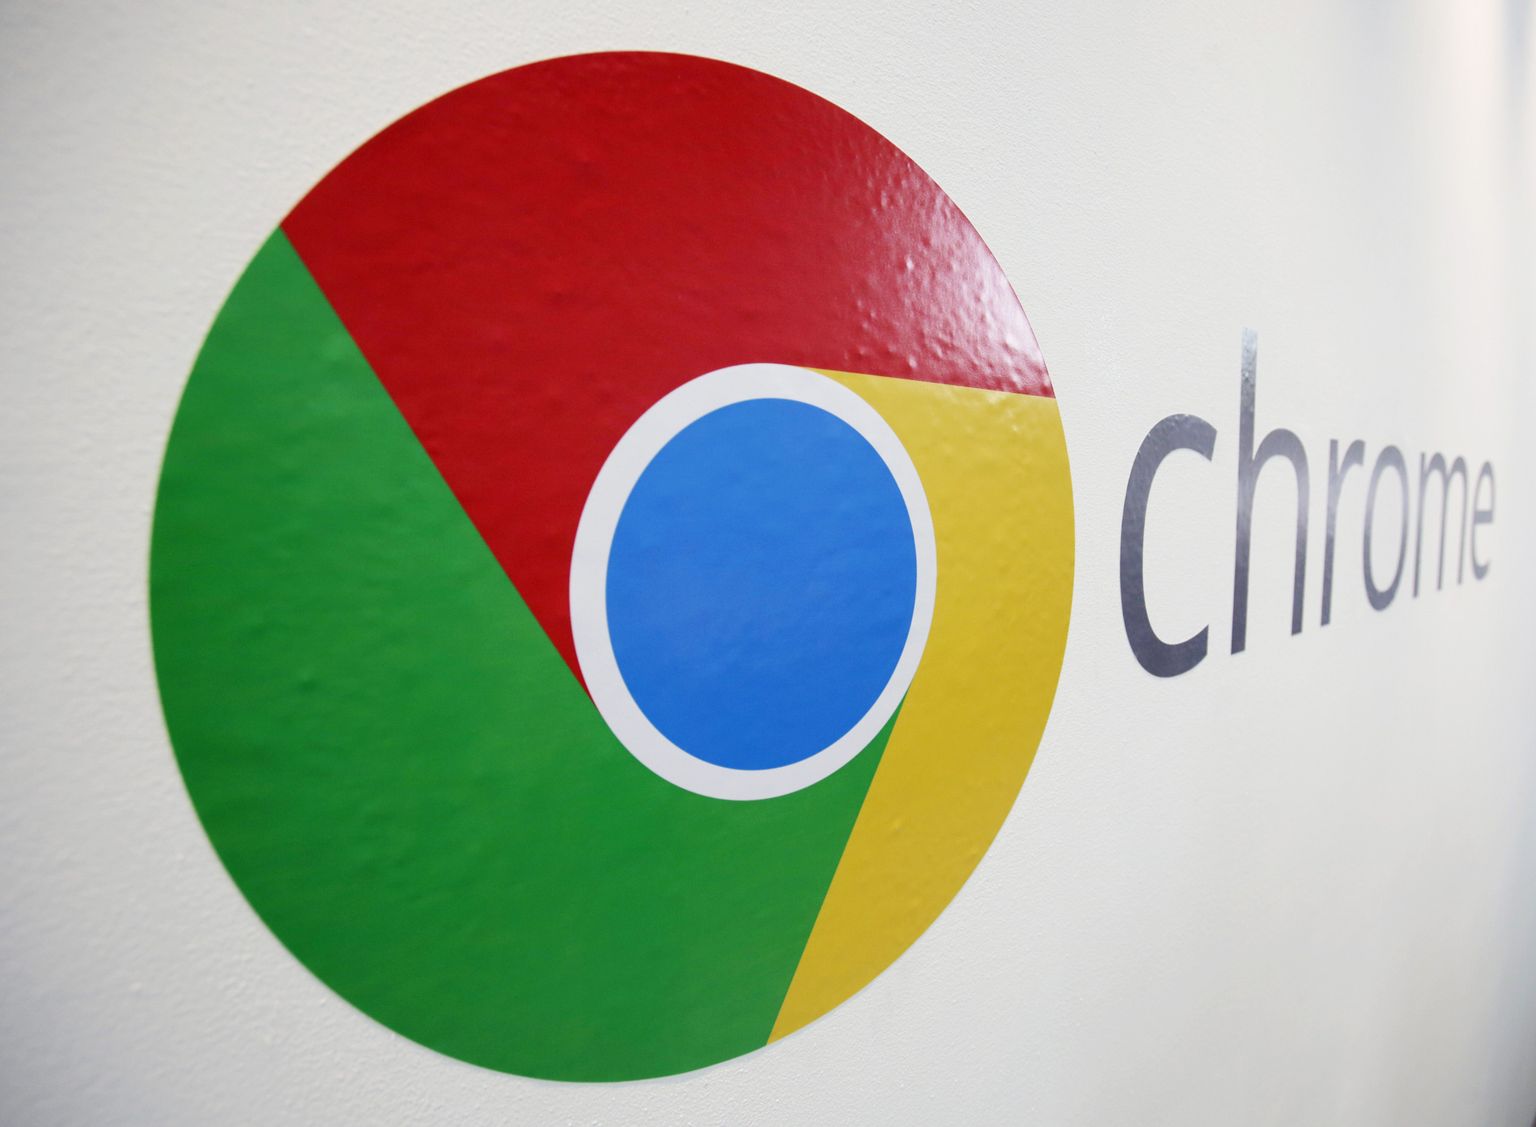 Chrome'i logo